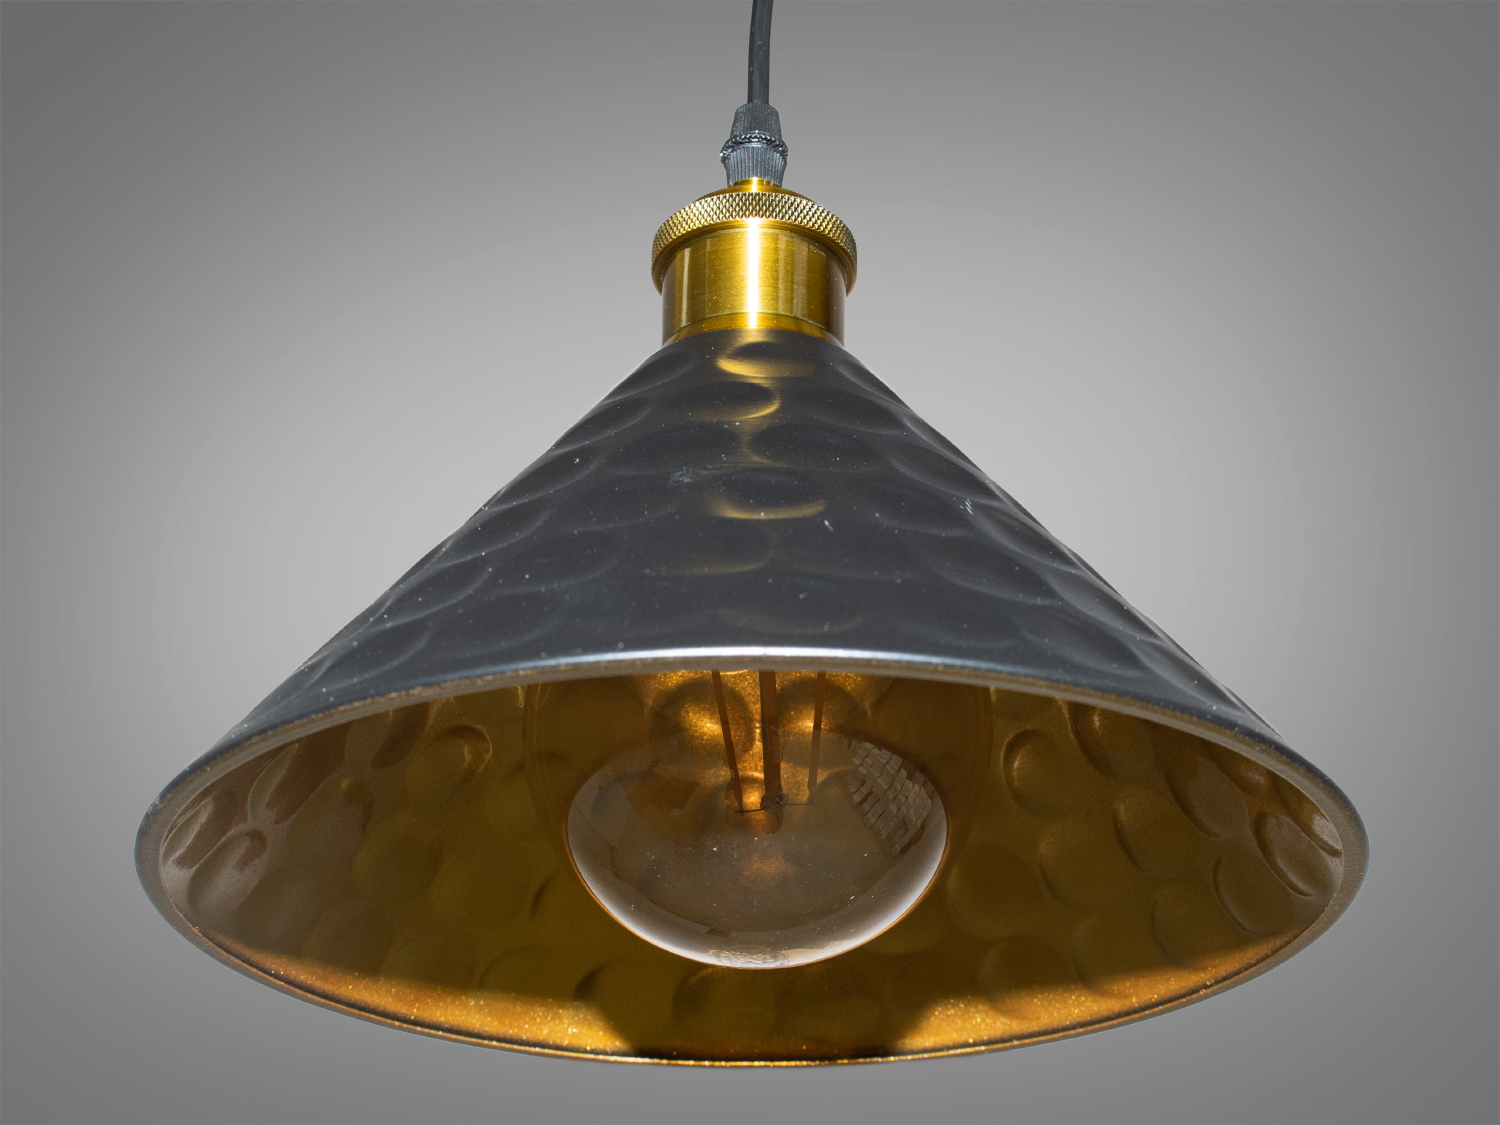 Світильник-підвіс в стилі лофт, який ідеально підходить під лампочку Едісона, об'єднує  у собі вишуканість  та  індустріальний шарм. Його дизайн підкреслює автентичність та теплоту лампочки Едісона, створюючи унікальний елемент декору та освітлення.
Характеристики світильника:
Лампа Едісона як центральний елемент: Спеціально розроблений дизайн, що виділяє та підкреслює лампу Едісона як центральний елемент світильника. Застосування лампи Едісона з декоративними нитками або нестандартною формою додає виробу вишуканості та тепла. Лампочка Едісона надає приємне приглушене світло, створюючи тепло та затишну атмосферу в місці розташування світильника.
Матеріали з індустріальним виглядом: Використовуються металеві або чорні матеріали, що надають індустріальний шарм та вишуканість. Мінімалізм цього світильника підкреслить вашу індивідуальність і відчуття стилю. Металеві елементи можуть мати сліди старіння, підряпини чи інші недоліки, що є характерними для стилю лофт та надають світильнику виразний вигляд.
Лофтовий дизайн: З підвісом у вигляді ланцюга чи троса, грубими металевими деталями та відкритим дизайном, що додає стиль лофту. Стиль «Лофт» зараз дуже популярний, його люблять як творчі особистості, так і вельми практичні люди, які віддають перевагу комфорту і простоті в інтер'єрі. Світильники в стилі «лофт» ідеально впишуться в сучасні будинки, квартири, кафе, арт-простори, коворкінги, квеструми.
Підвісний світильник ідеально поєднується з іншими індустріальними деталями, такими як відкриті труби, цегла або металеві стільниці.
Можливість регулювання висоти: Дозволяє легко адаптувати світильник до різних просторових умов.
Сфери використання:
Ресторани та кафе: Створює тепло та затишне освітлення, ідеально підходить для створення атмосфери в зонах обіду або бару.
Житлові приміщення: Виглядає чудово у вітальнях, кухнях чи спальнях, додаючи індустріальний акцент до інтер'єру.
Магазини та виставкові зони: Створює стильний вигляд для приміщень, де важливий дизайн та видиму привабливість. Вигідно підкреслює стильні товари або предмети мистецтва, надаючи їм індивідуальний вигляд.
Фото- та відеостудії: Забезпечує освітлення з характером для створення унікальних фото чи відеоматеріалів.
Цей світильник-підвіс у стилі лофт з лампочкою Едісона створює особливу атмосферу, де тепло та стиль індустріального дизайну взаємодіють, надаючи приміщенню унікальний і вишуканий вигляд.
Лампа в комплект не входить.